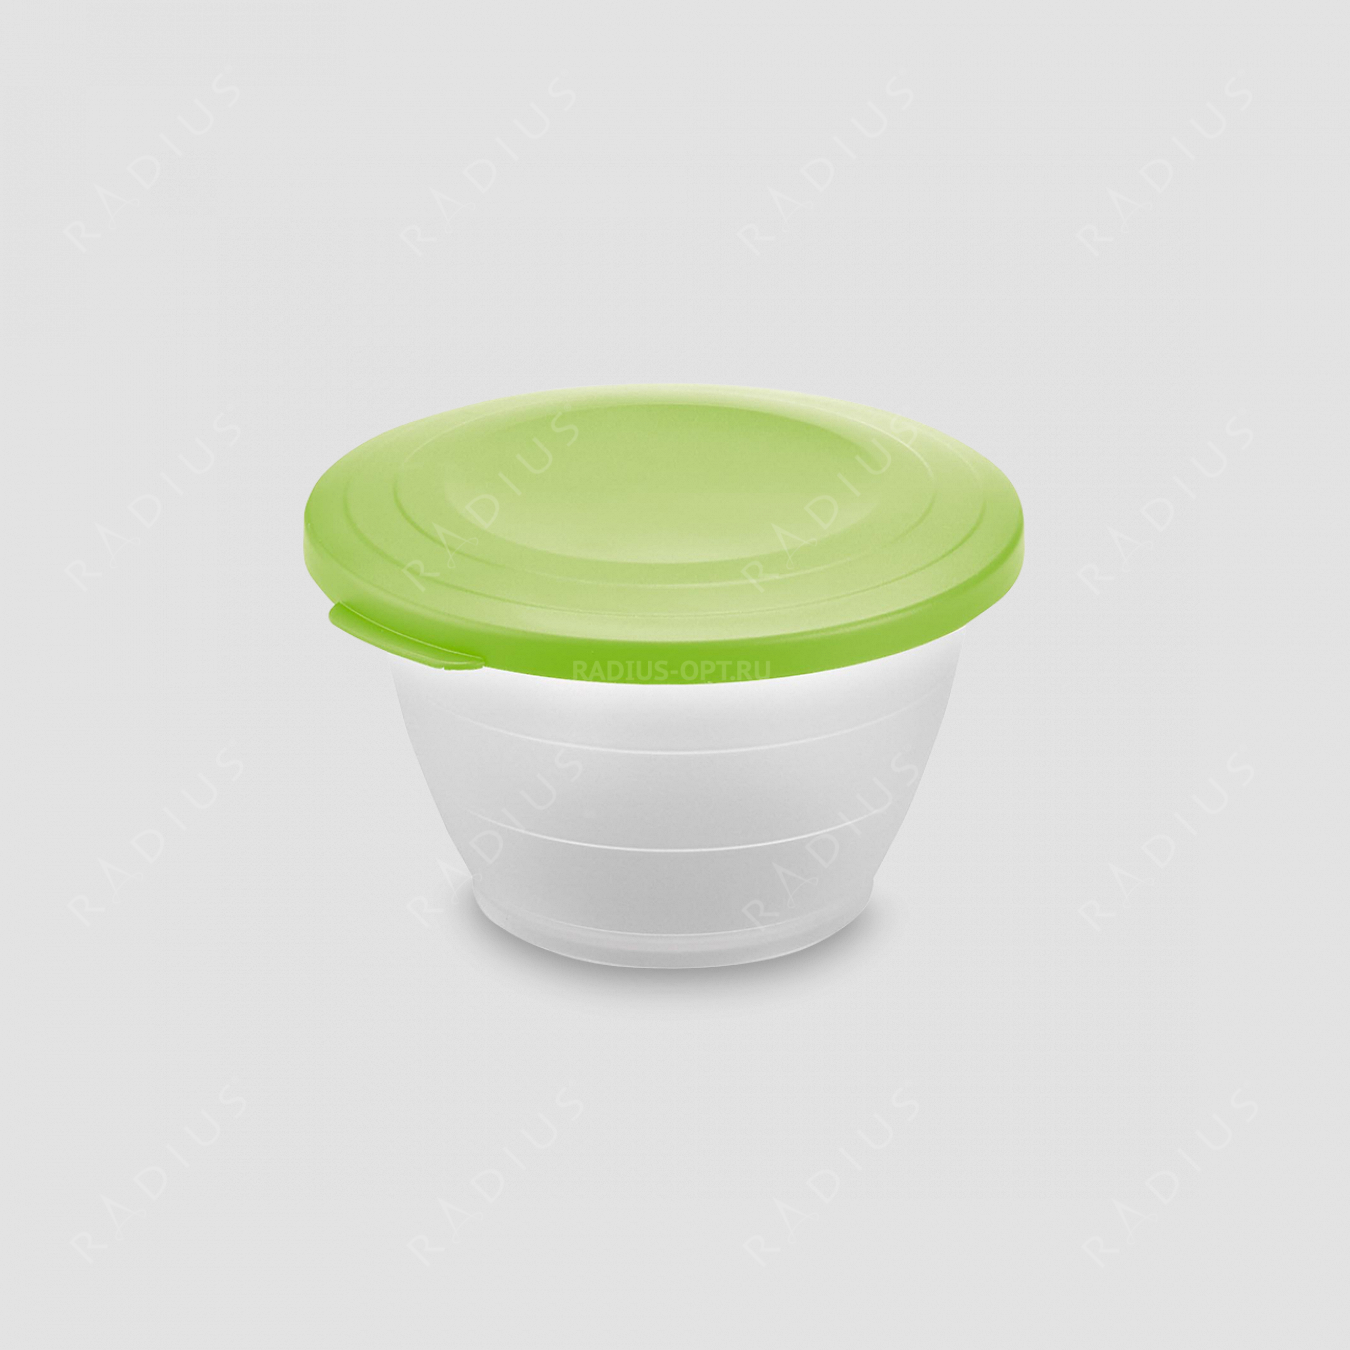 Емкость для салата с крышкой, объем 0,6 л, диаметр 13 см, цвет - зеленый, серия Plastic tools, Westmark, Германия